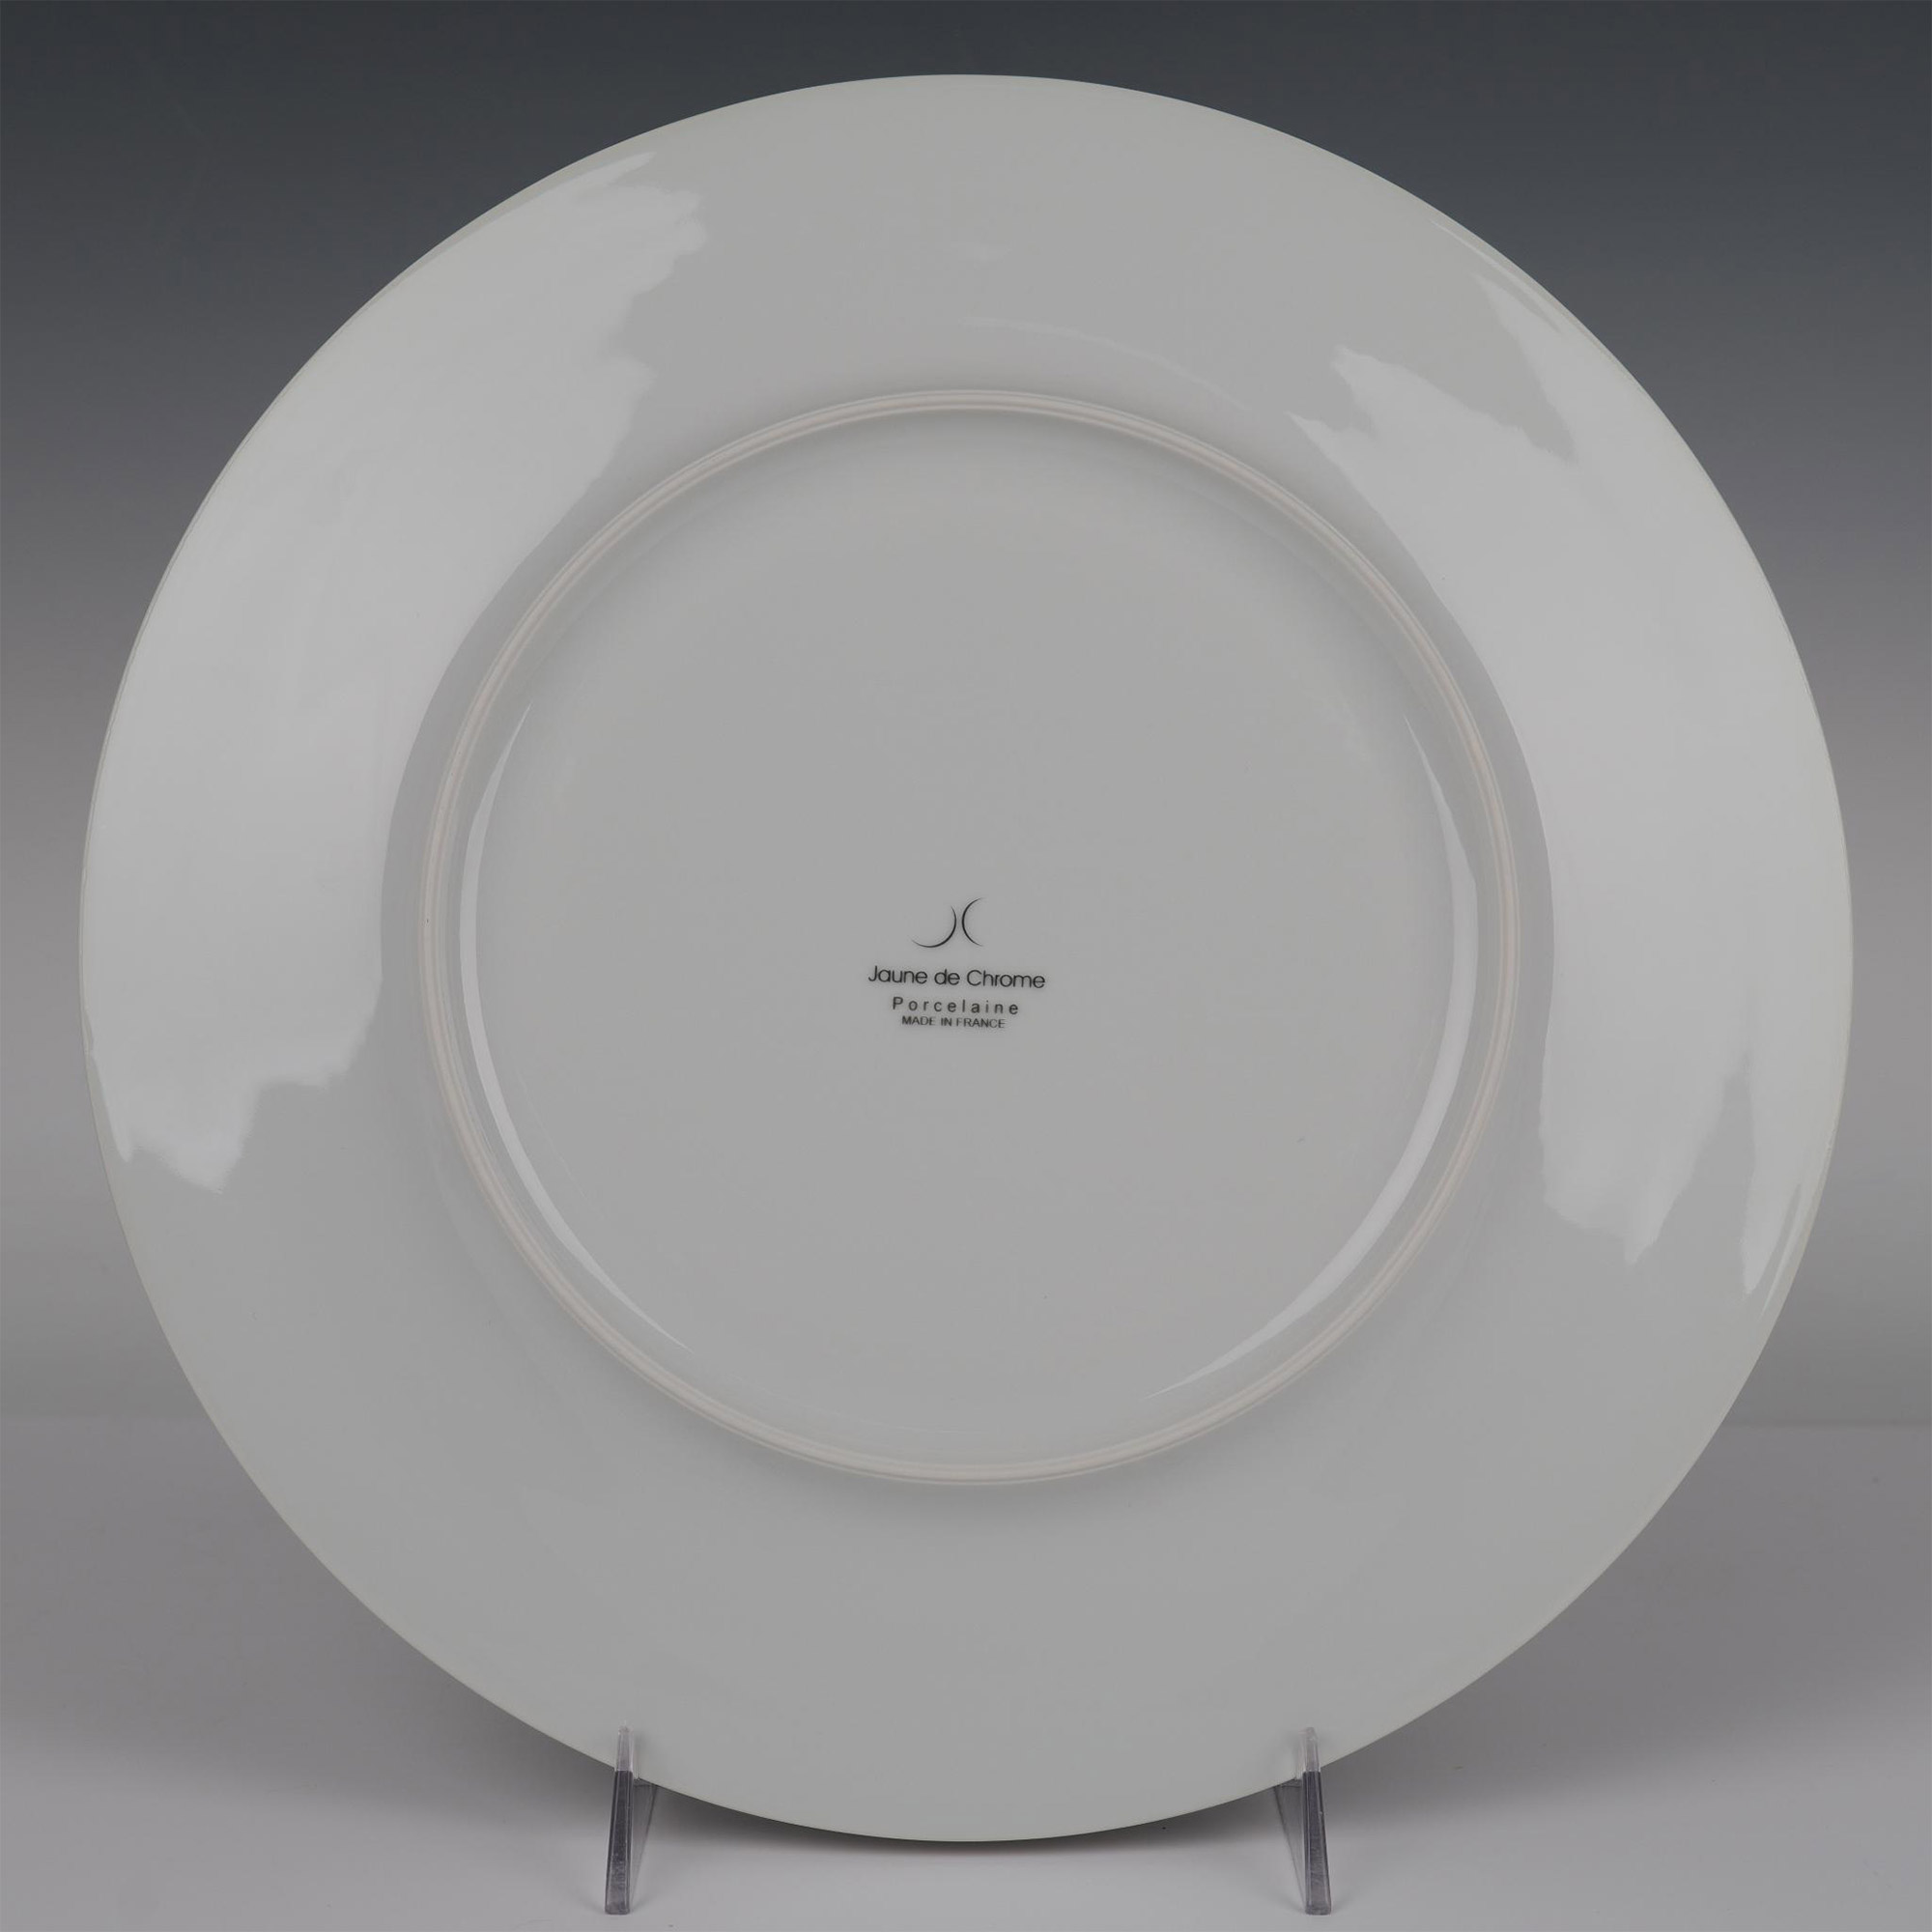 4pc Jaune de Chrome Porcelain Charger Plates, Basmati Gold - Image 3 of 4